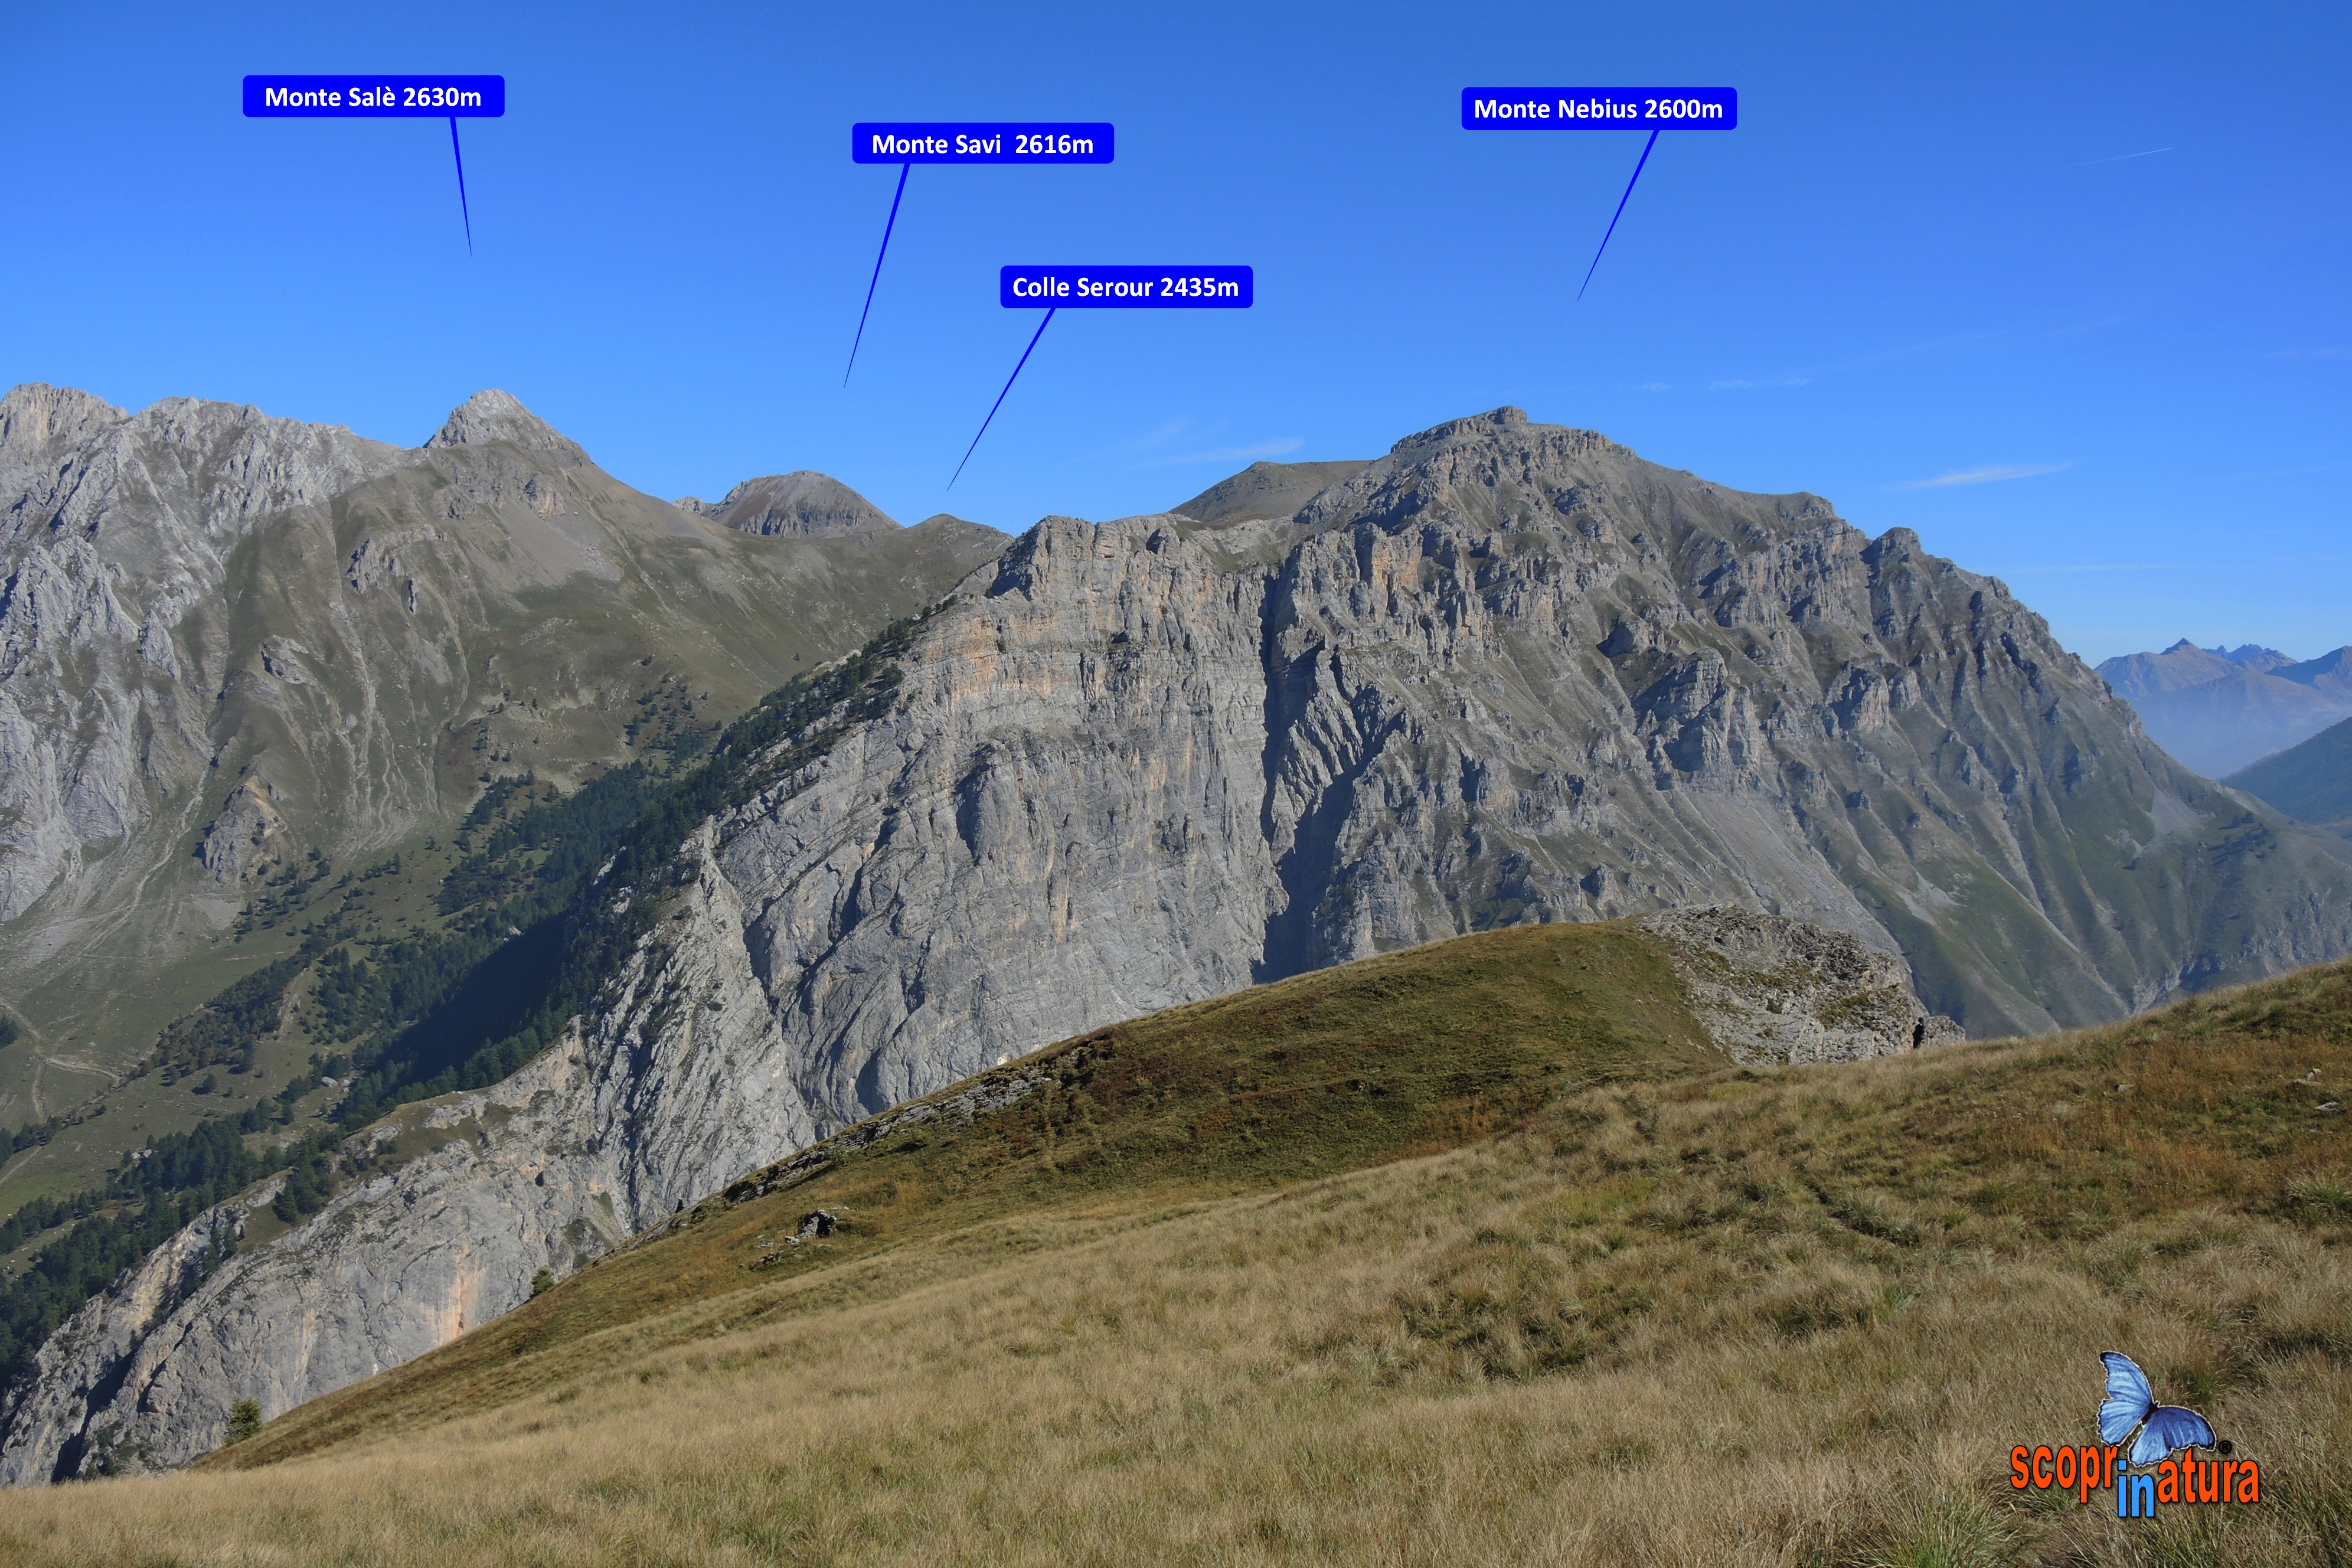 panoramica  verso il Monte Salè  2630m  Monte Savi 2616m  Colle Serour 2435m e  Monte Nebius 2600m